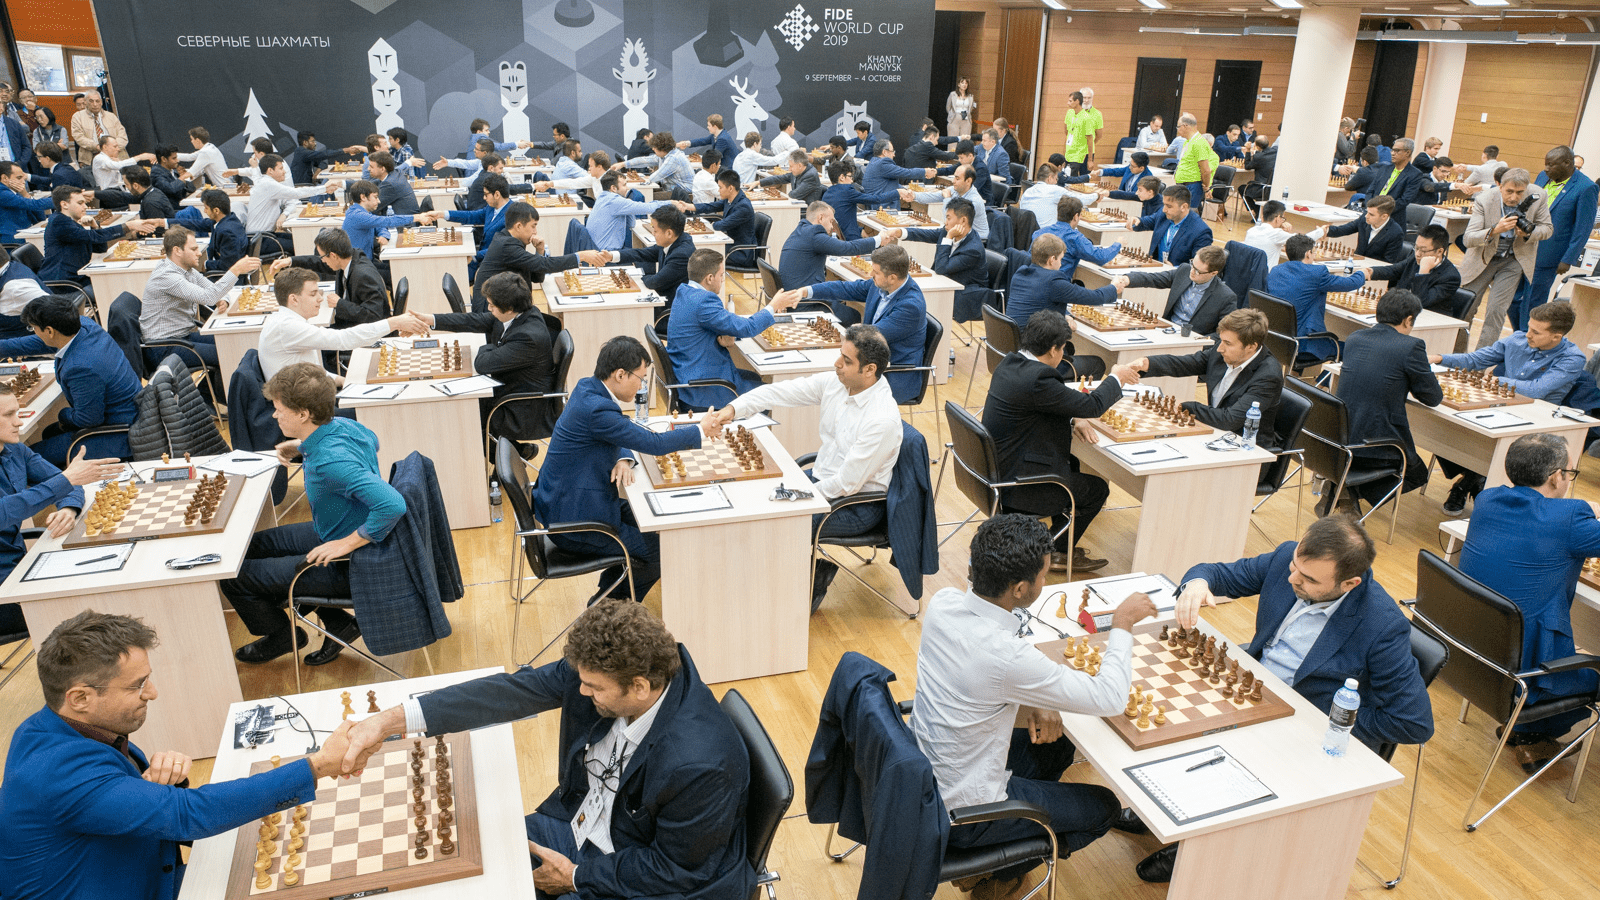 O Campeonato Mundial de Xadrez da FIDE será realizado na Exposição